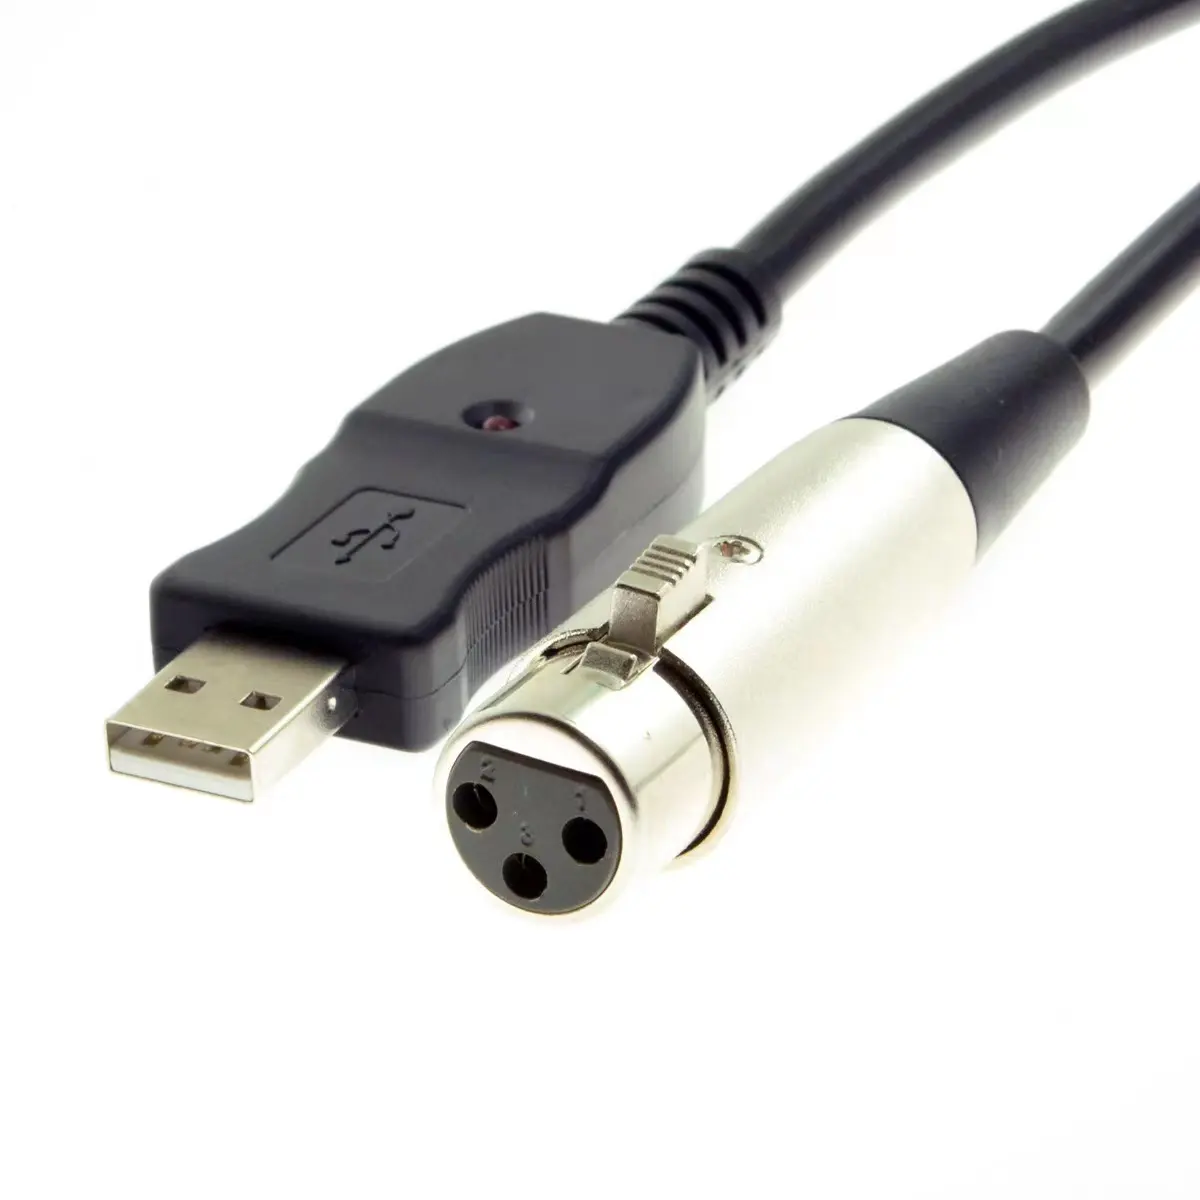 USB แบบกำหนดเองพร้อมไฟแสดงสถานะ LED เป็น XLR สาย3PIN ตัวเมียลำโพงเสียงสเตอริโอ AMP Y สายอะแดปเตอร์ไมโครโฟนสายปรับจูน